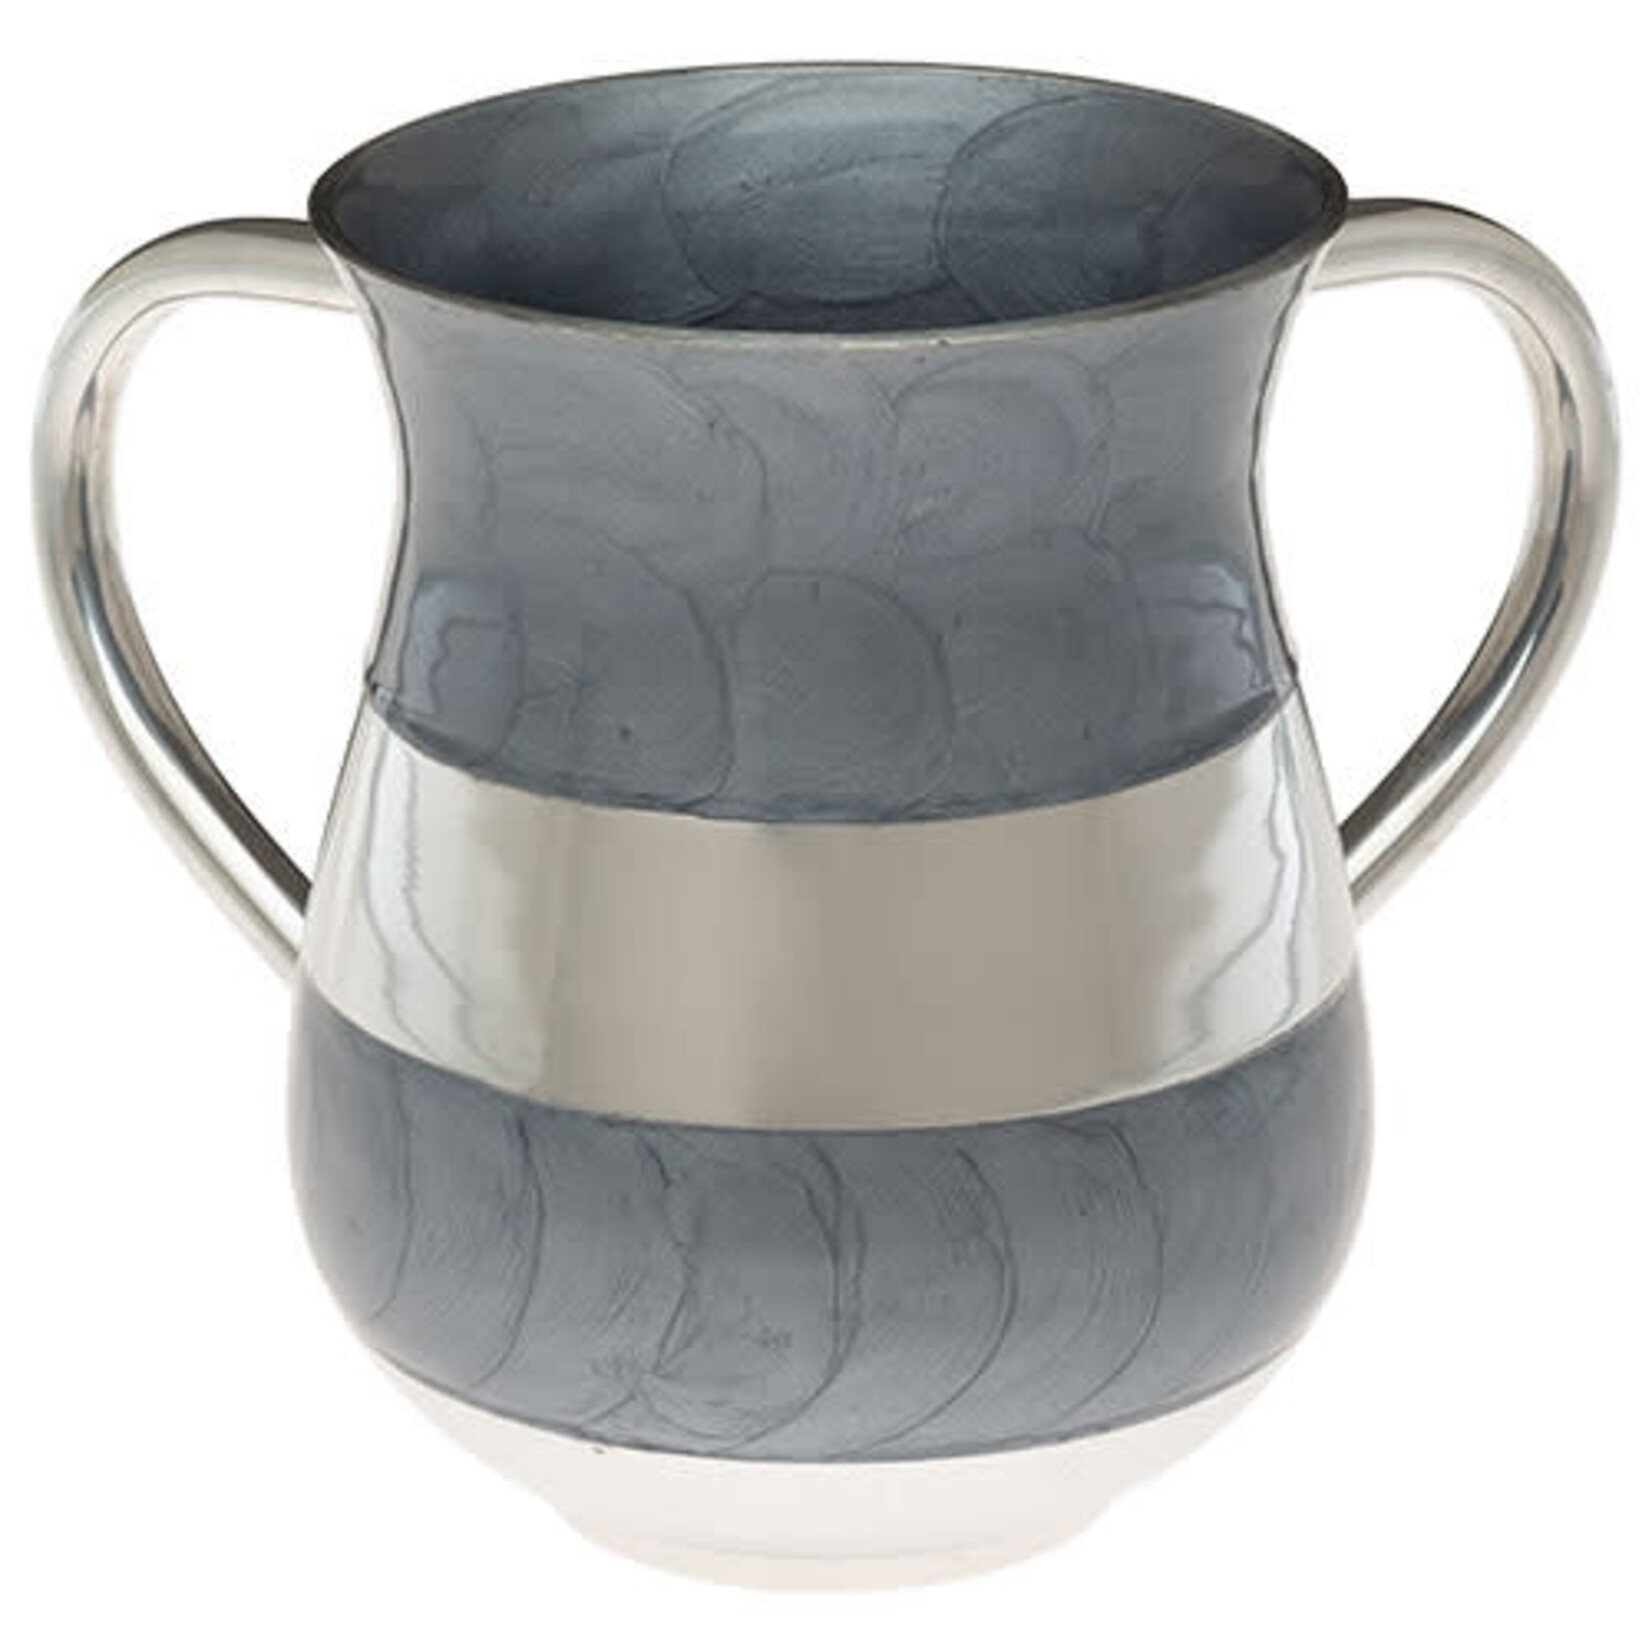 Aluminum Wash Cup - Gray